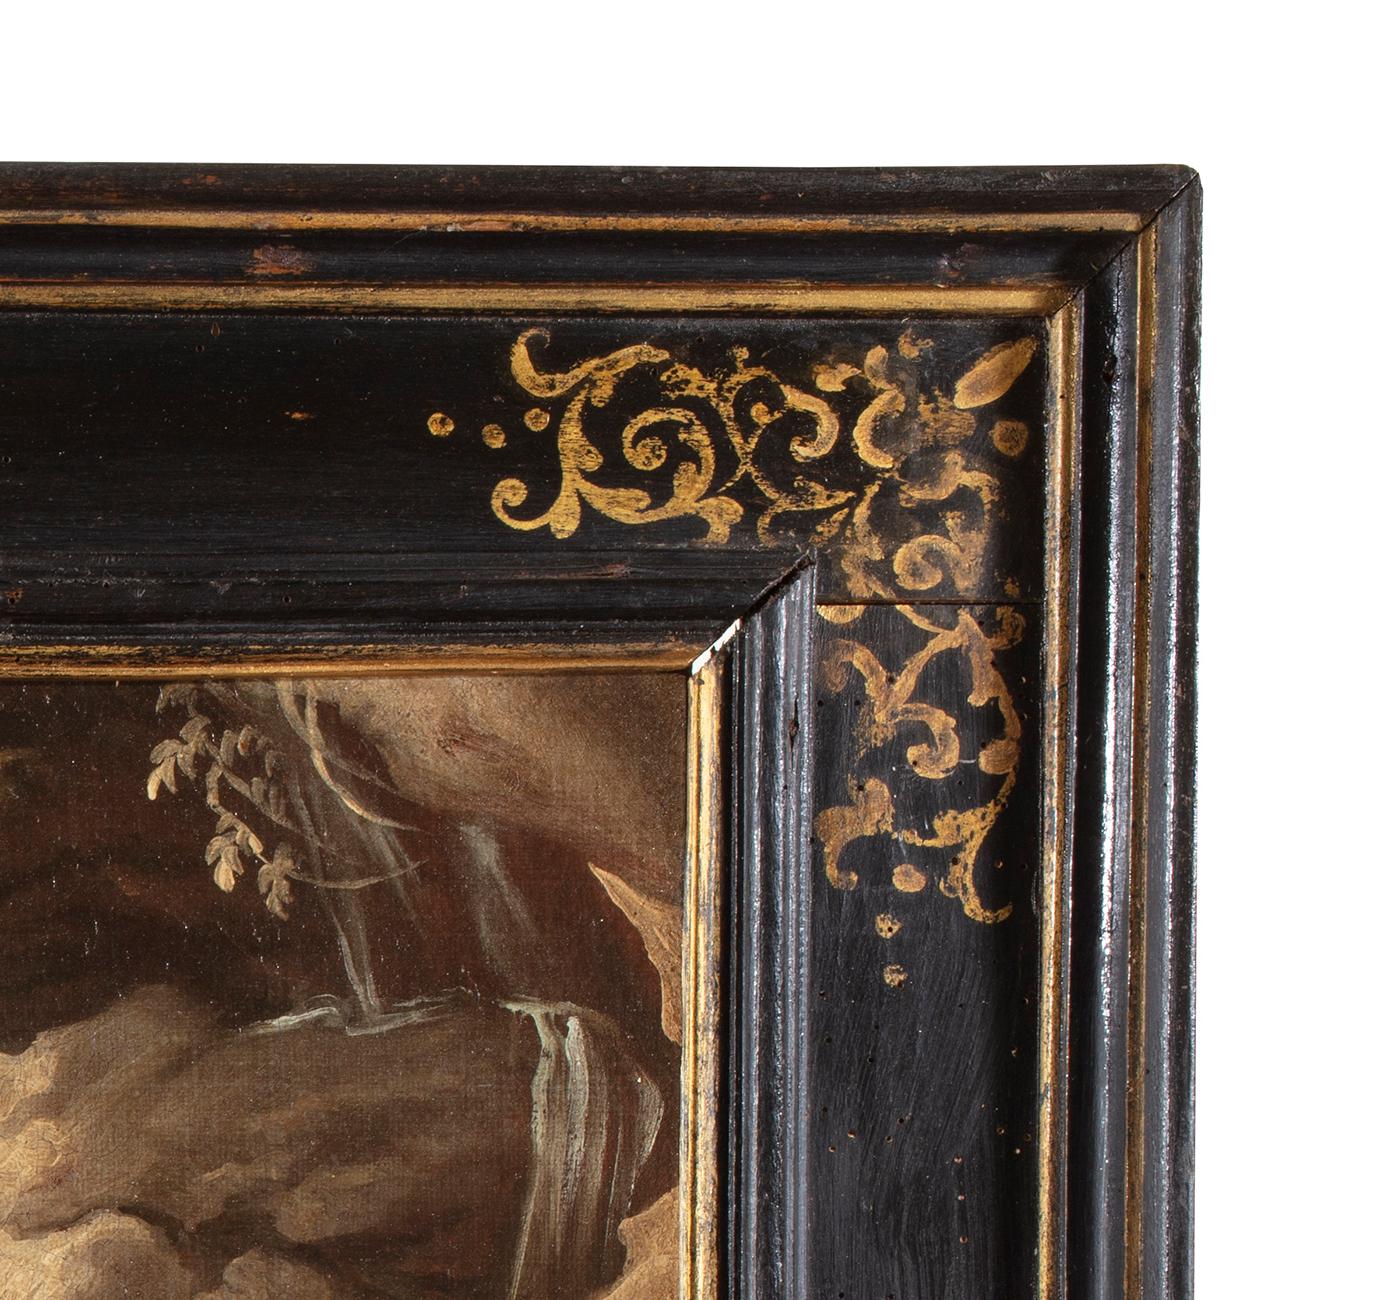 Giuseppe Antonio Pianca (Agnona di Borgosesia/VC, 1703 - nach 1757)
 
öl auf Leinwand, cm. 49 x 57 - mit Rahmen cm. 67 x 77
Antiker Kassettenrahmen aus Holz, Ebenholz und Goldverzierungen

Am Ufer eines reißenden Flusses stehen ein Säugling in einem